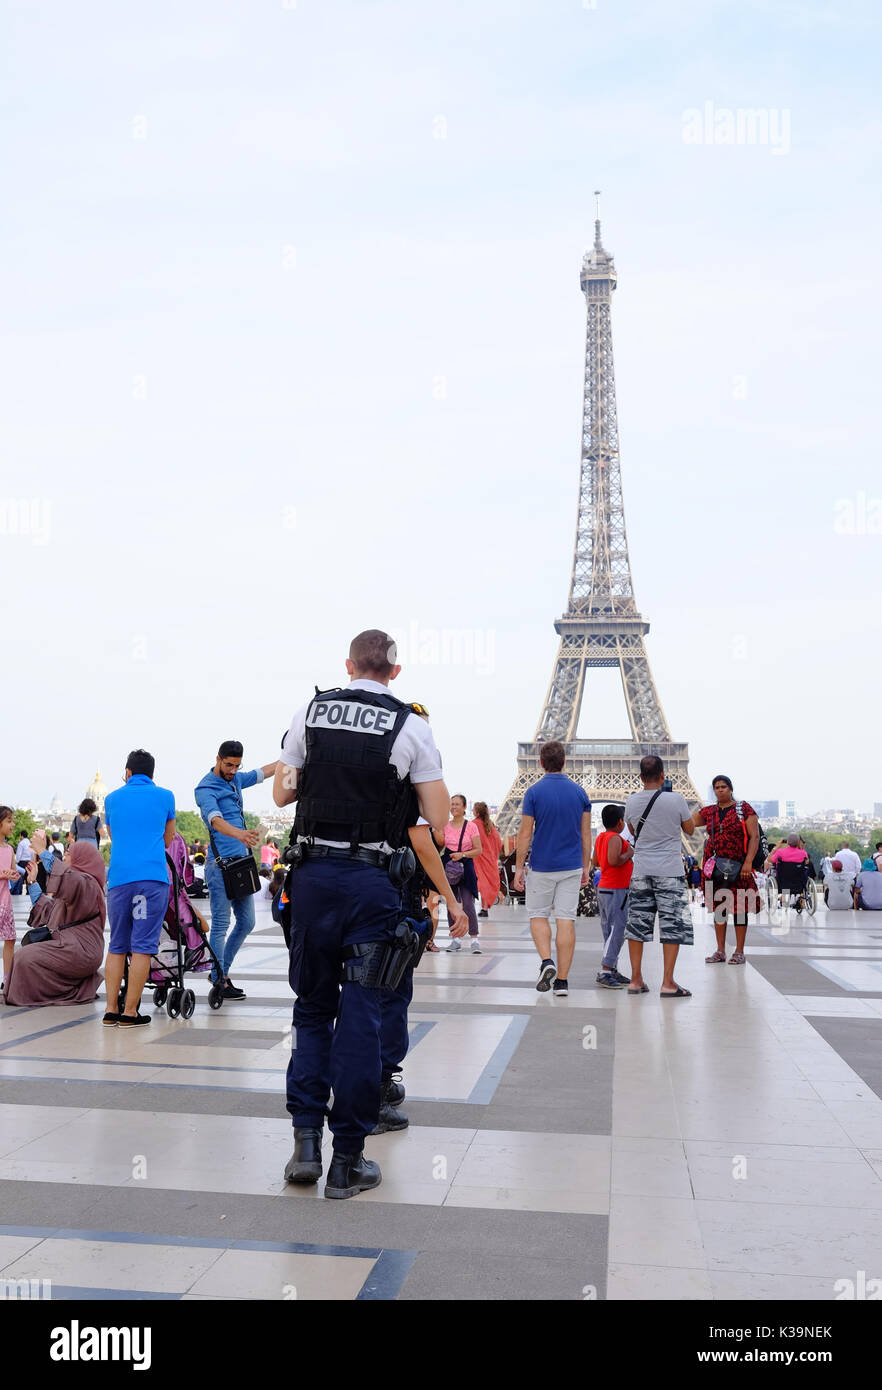 La policía francesa armados patrullan las calles de París y la Torre Eiffel, en respuesta a la alerta de terrorismo en Francia, la protección de monumentos y lugares de interés turístico Foto de stock